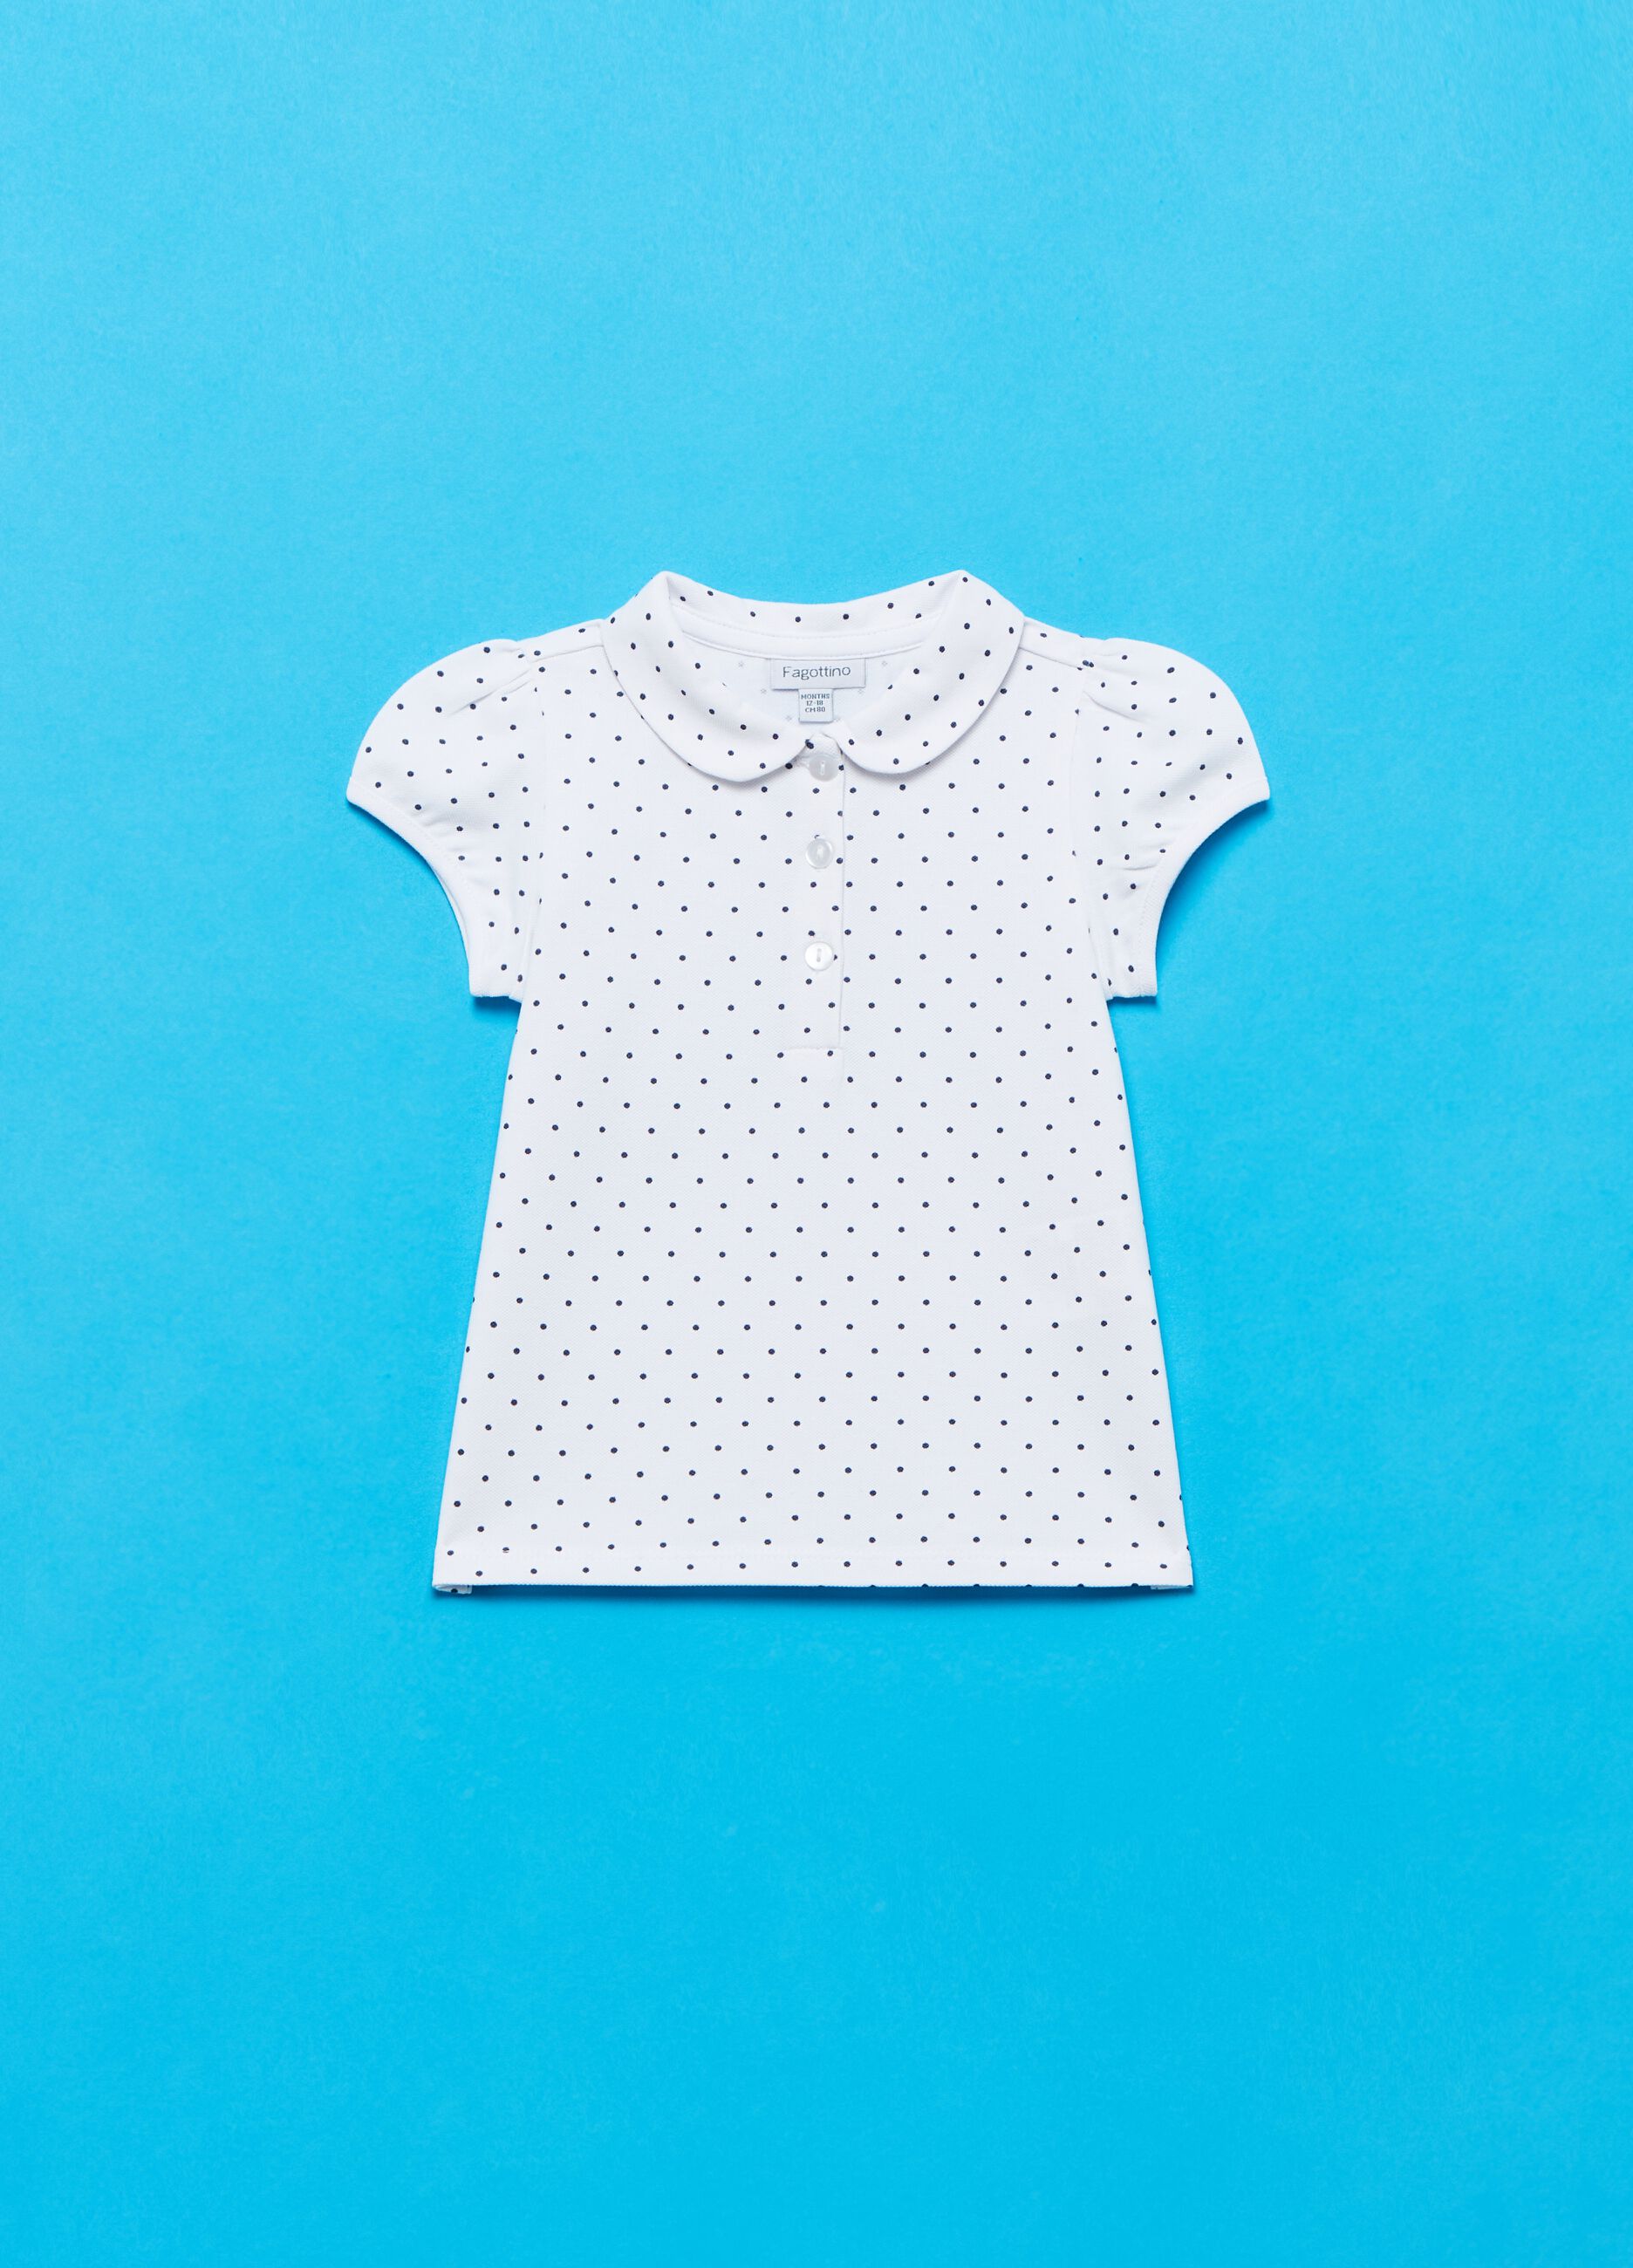 Polo shirt in polka dot piquet cotton